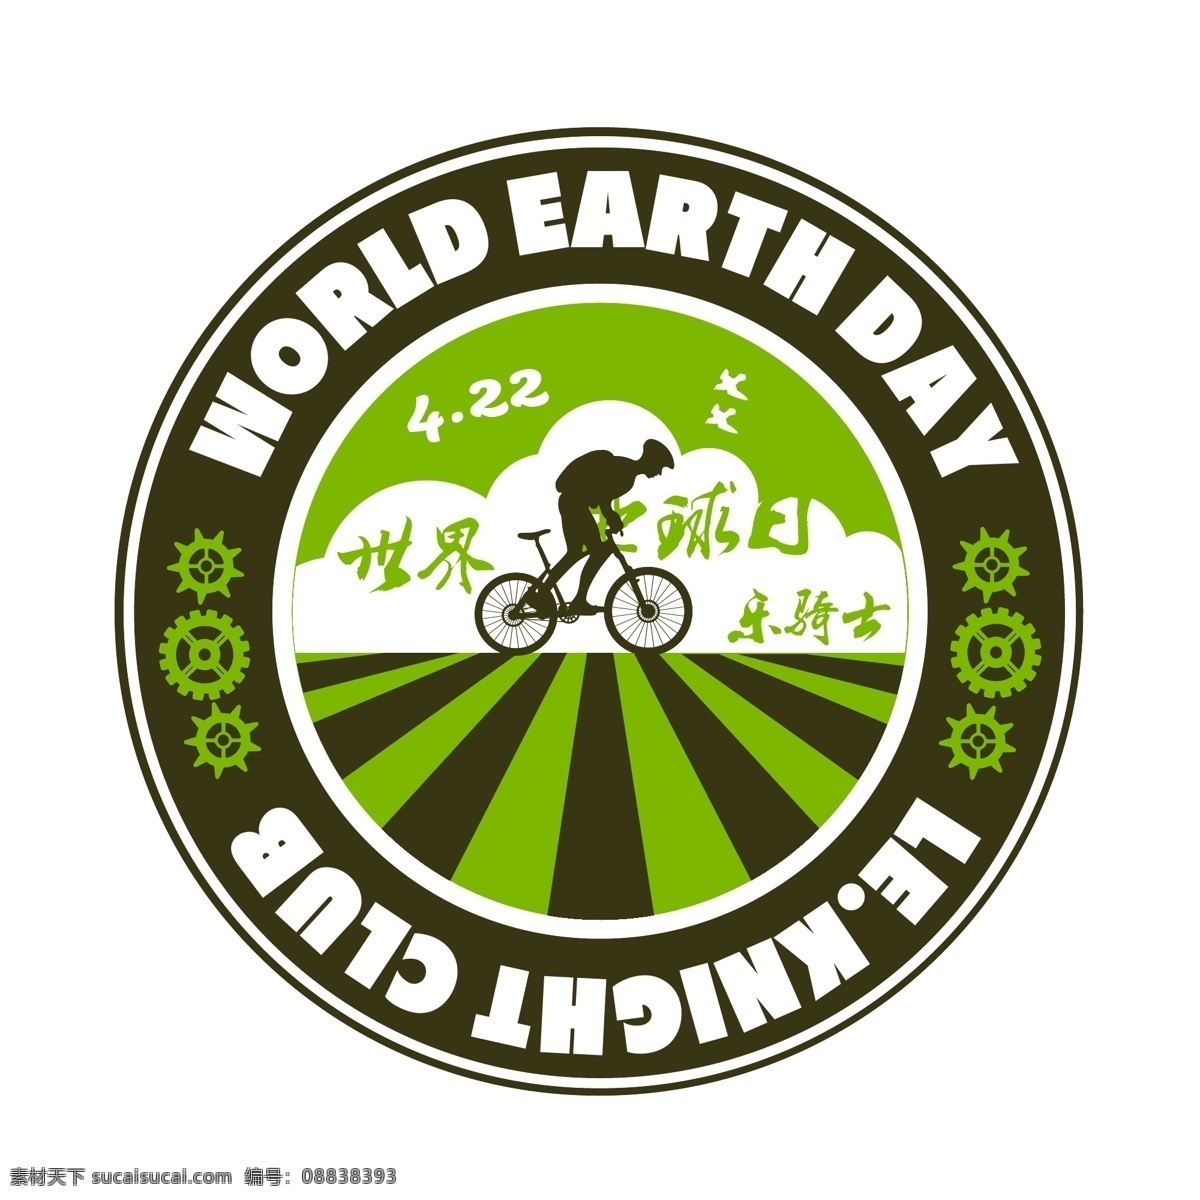 世界地球日 4月22 月 日 地球日 422地球日 绿色环保 低碳节能 绿色骑行 小图标 标识标志图标 矢量